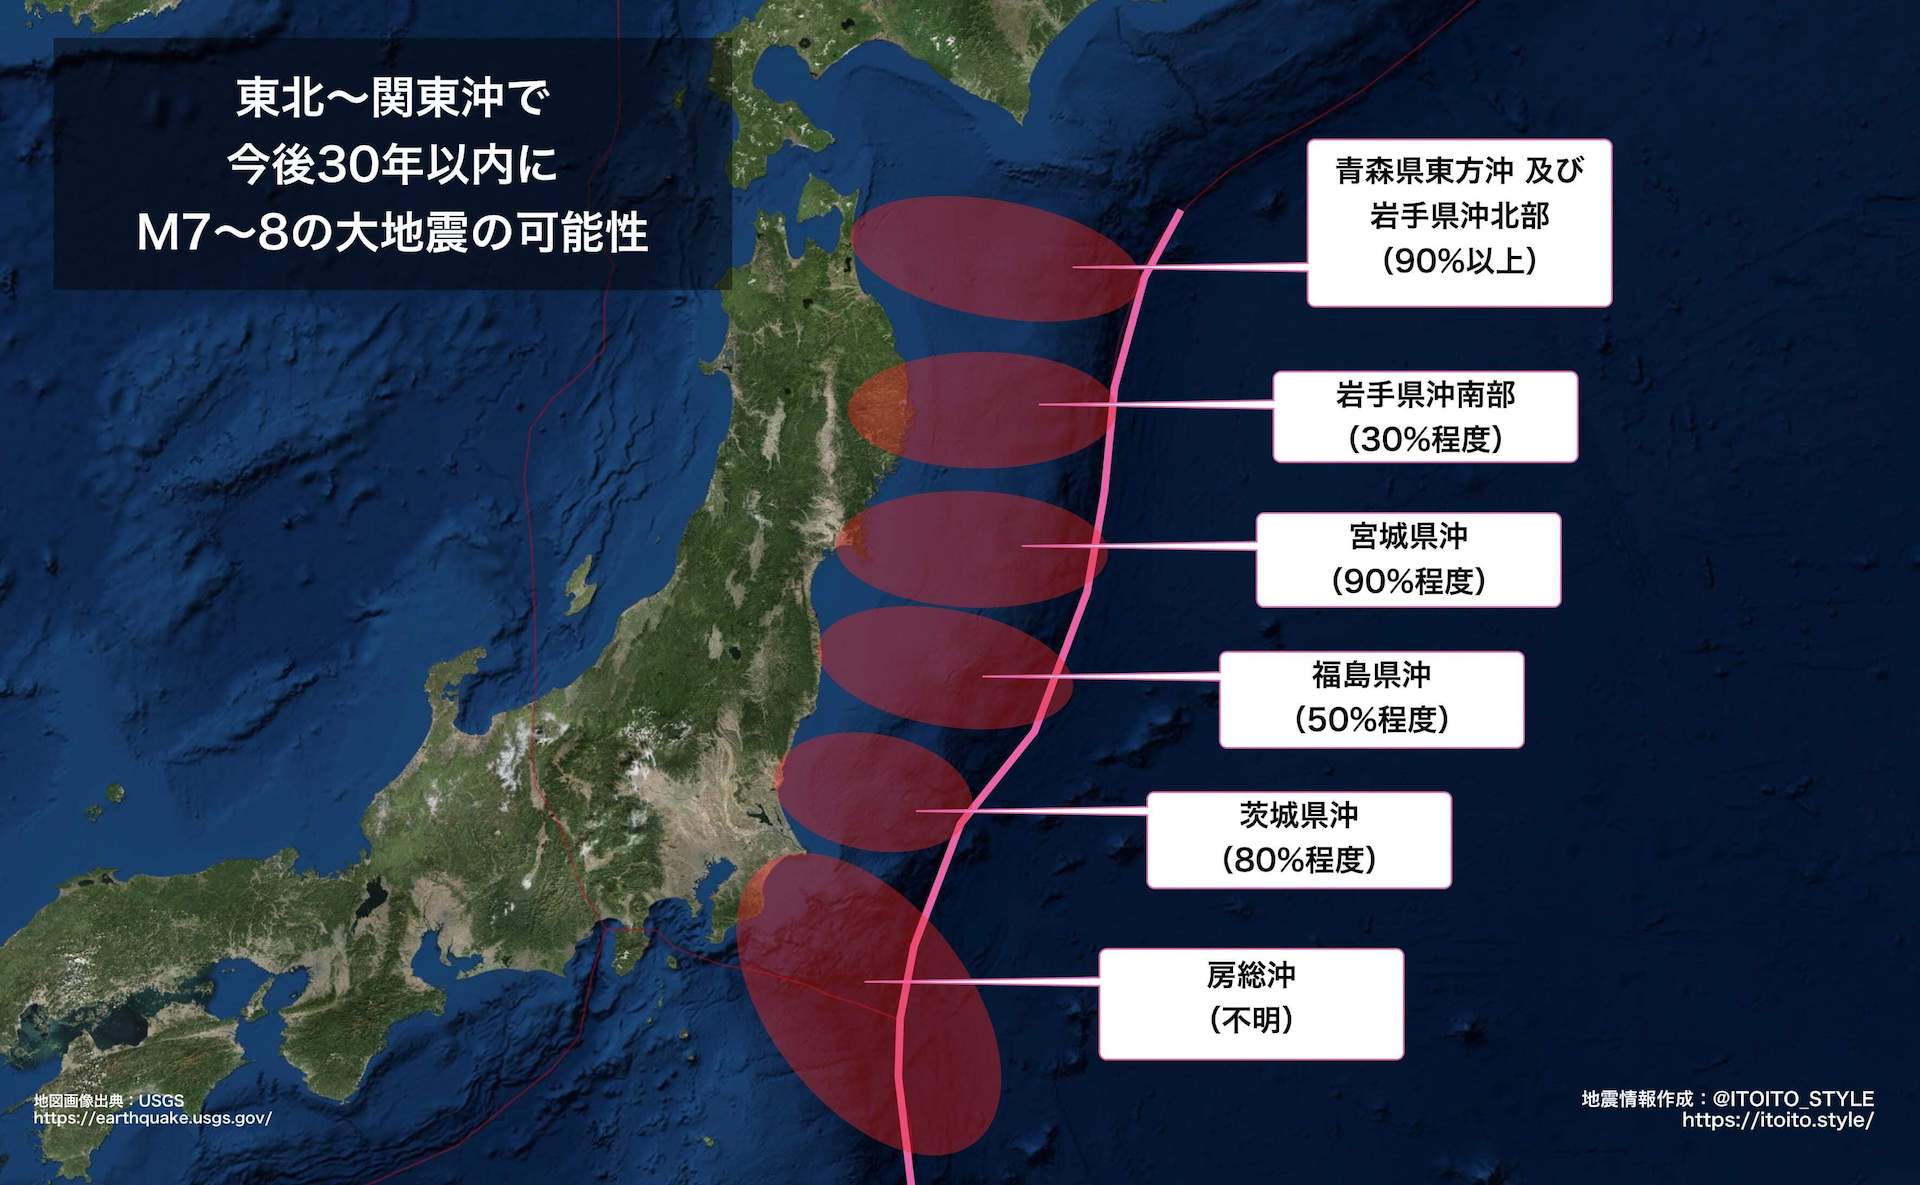 首都直下地震や南海トラフ巨大地震だけではない、これから日本が直面する大災害に備える | itoito.style